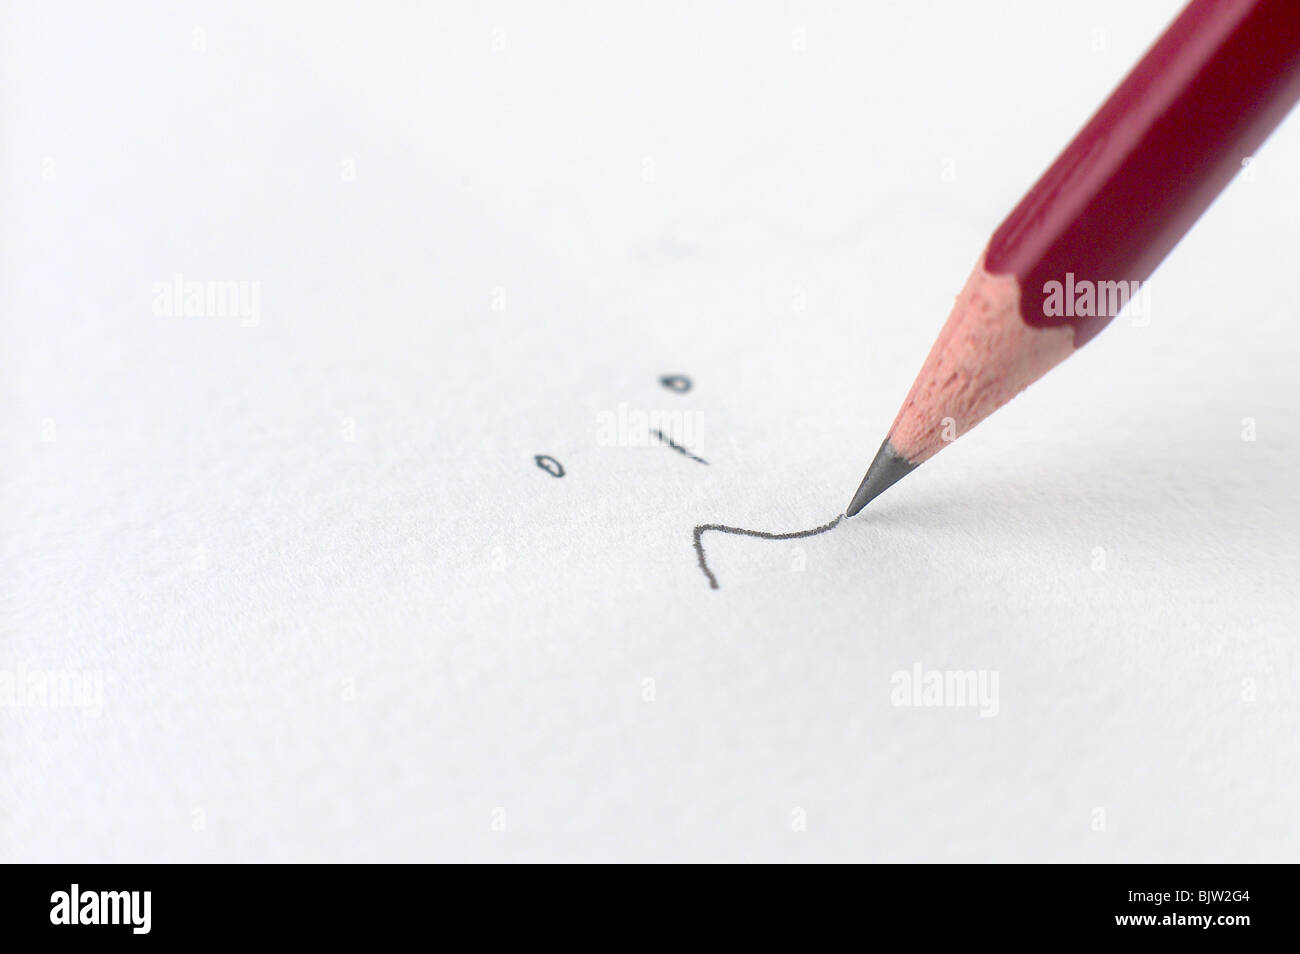 Dessin au crayon rouge sur papier aquarelle blanc Photo Stock - Alamy